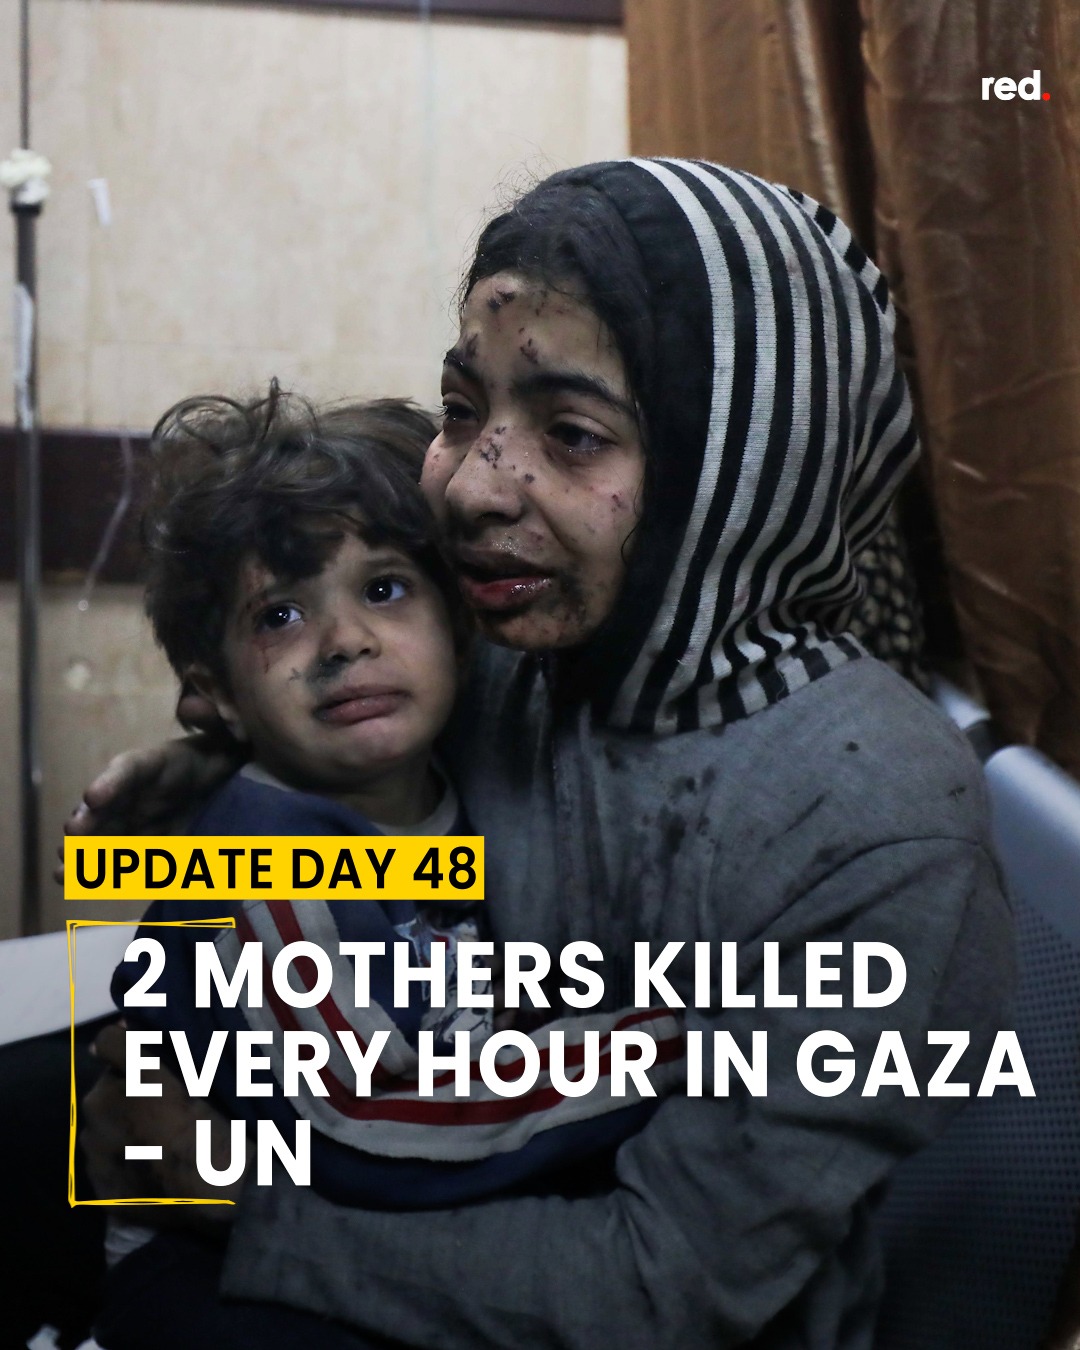 Gaza,da domani il cessate il fuoco ed i primi scambi di ostaggi e prigionieri. Oltre 14mila morti (6000 bambini) dopo 48 giorni.